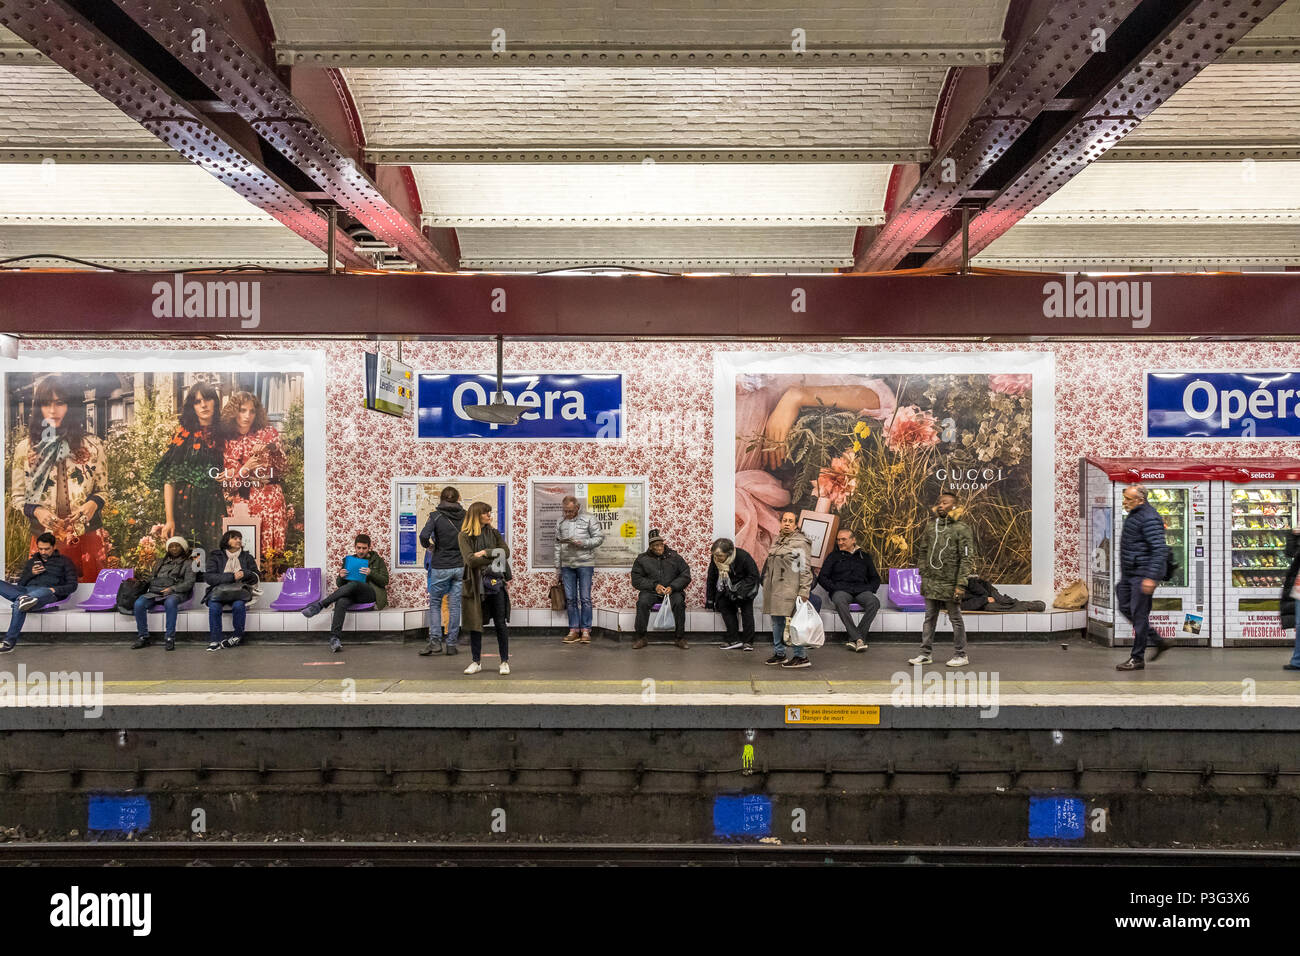 Personnes en attente d'un train à la station de métro Opéra à Paris .La station des murs ont été recouvert de papier peint fleuri pour une promotion Bloom Gucci Banque D'Images